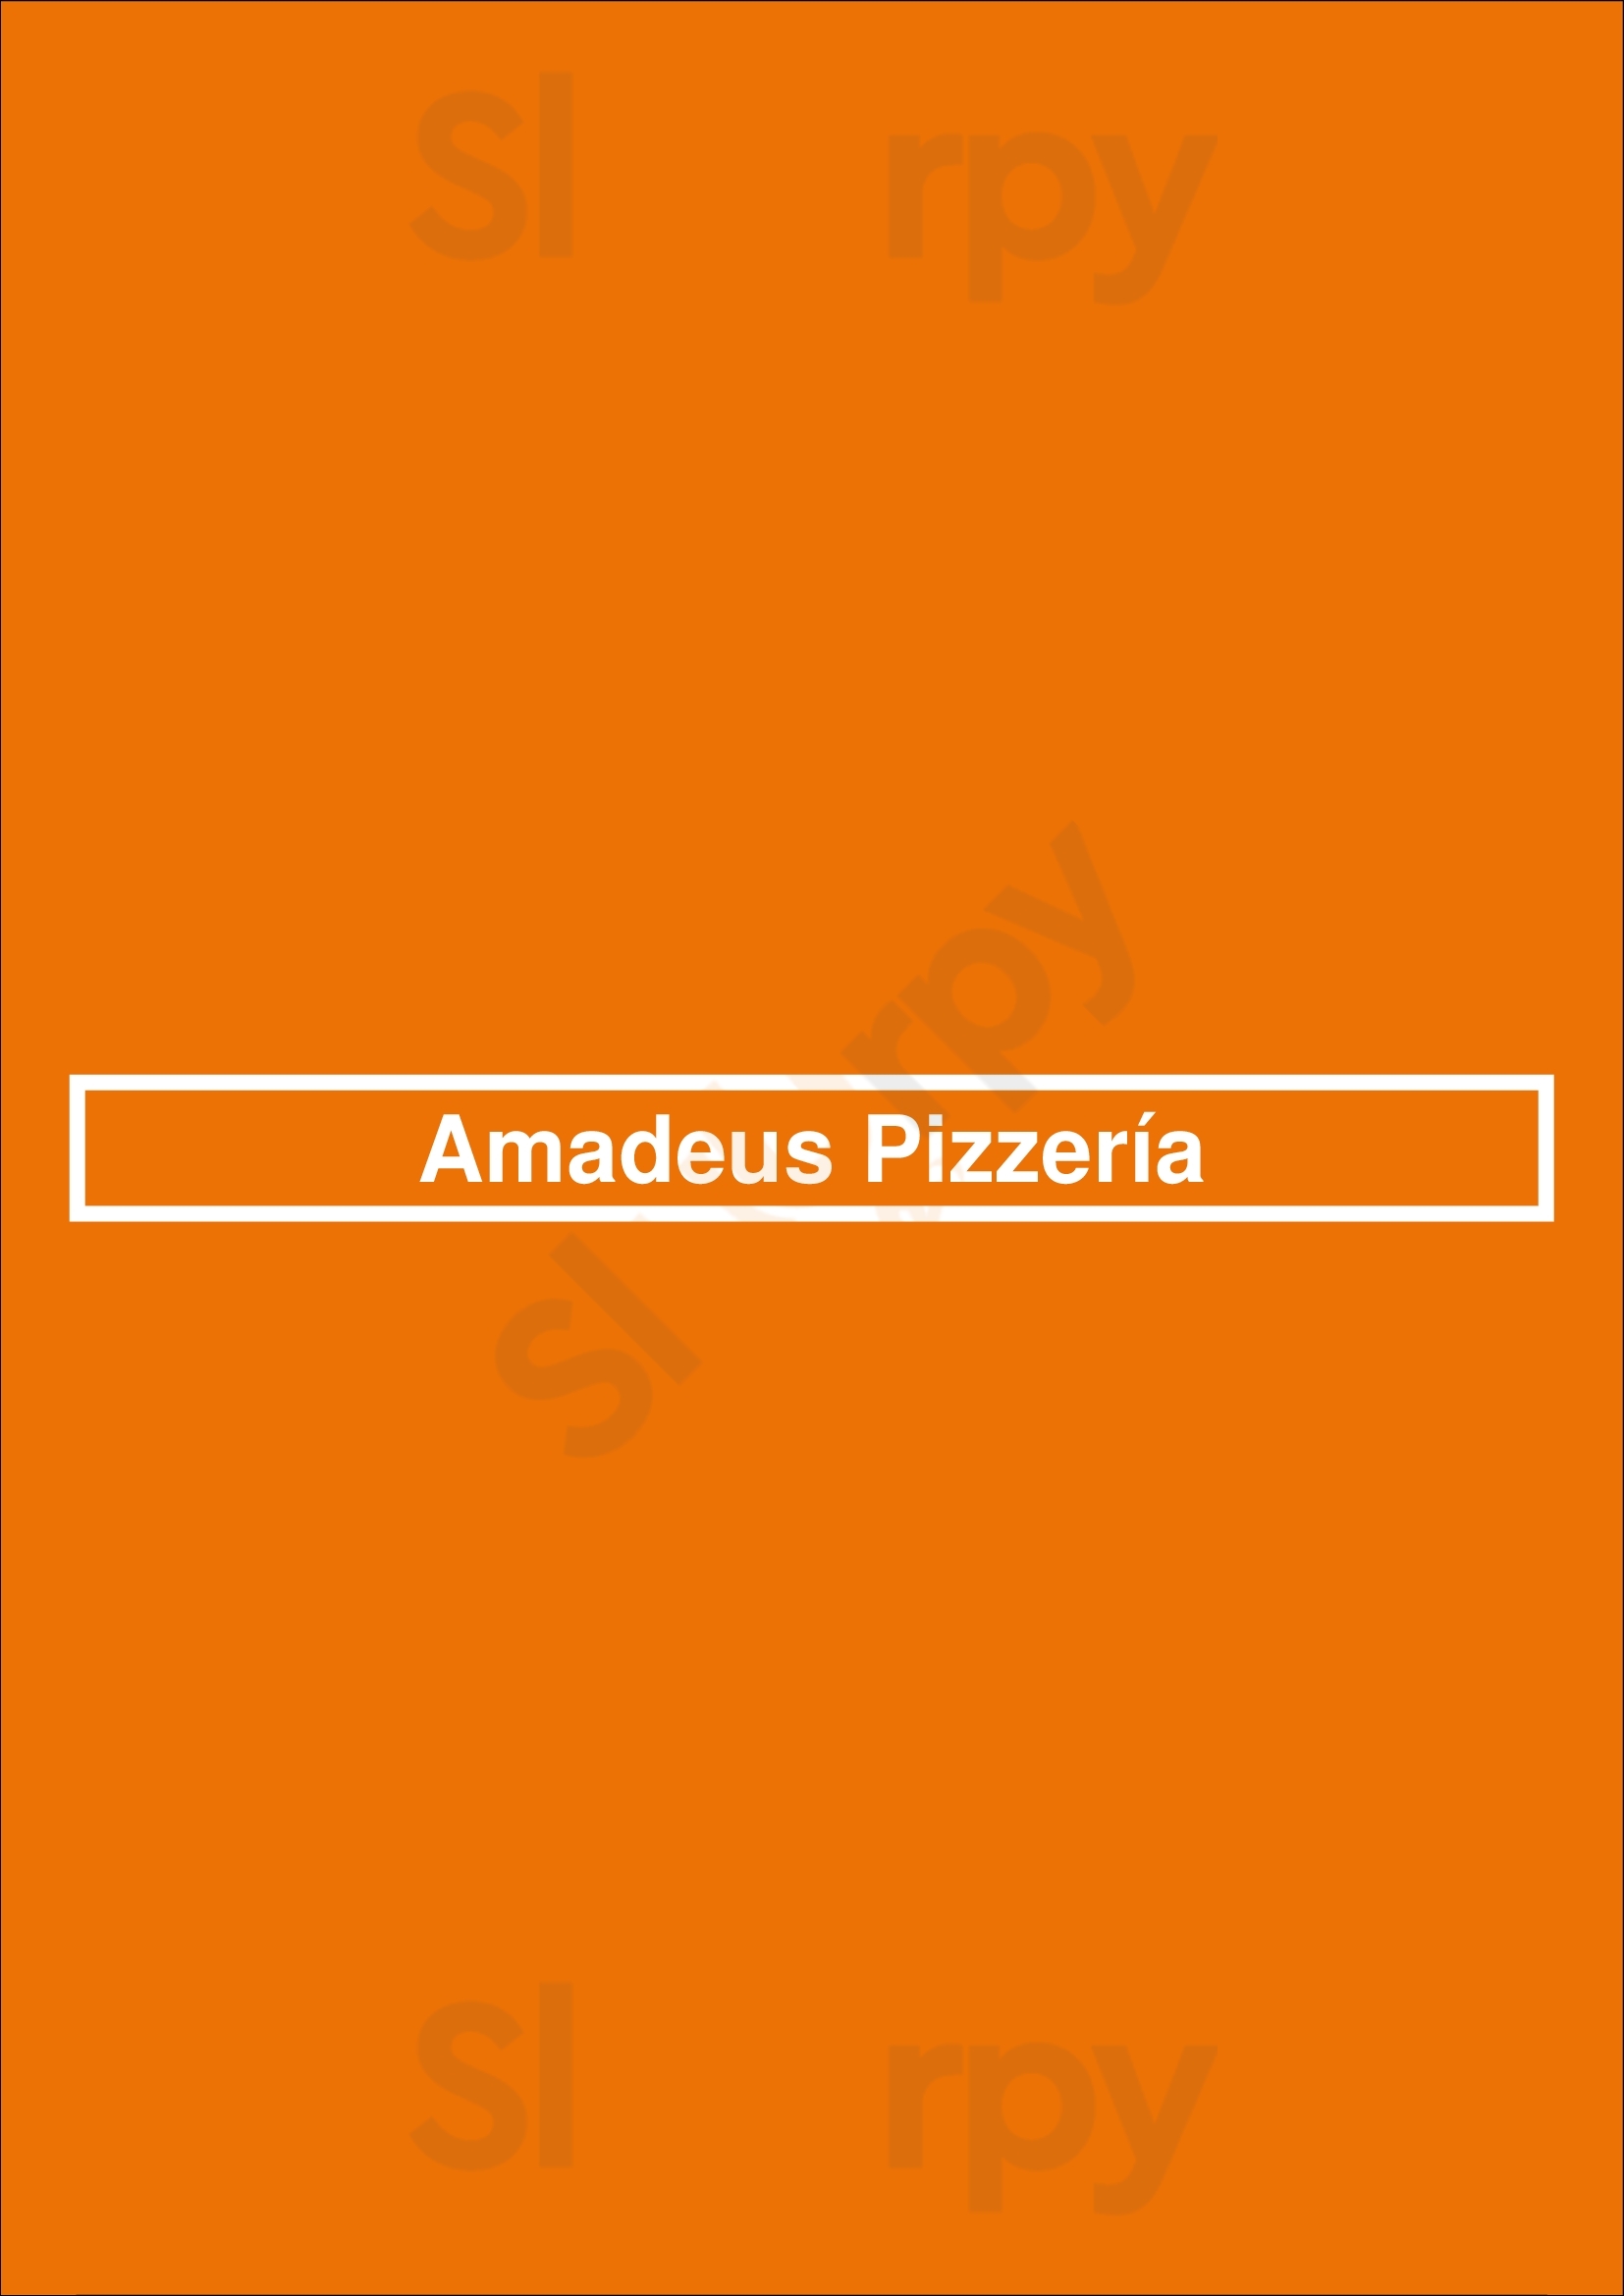 Amadeus Pizzería Las Palmas de Gran Canaria Menu - 1